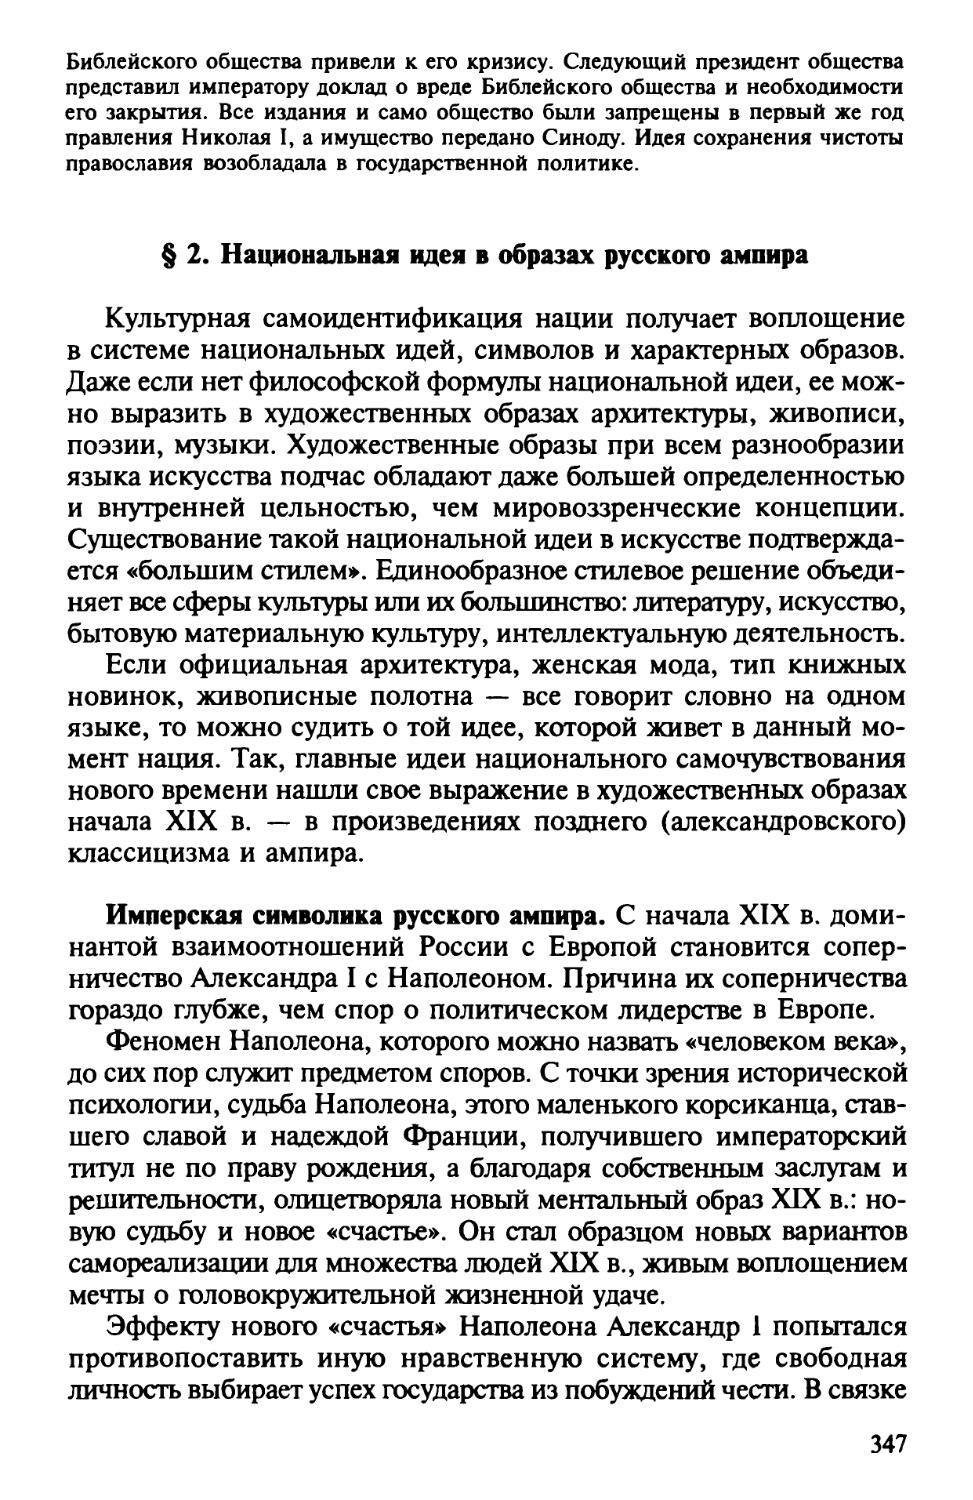 § 2. Национальная идея в образах русского ампира